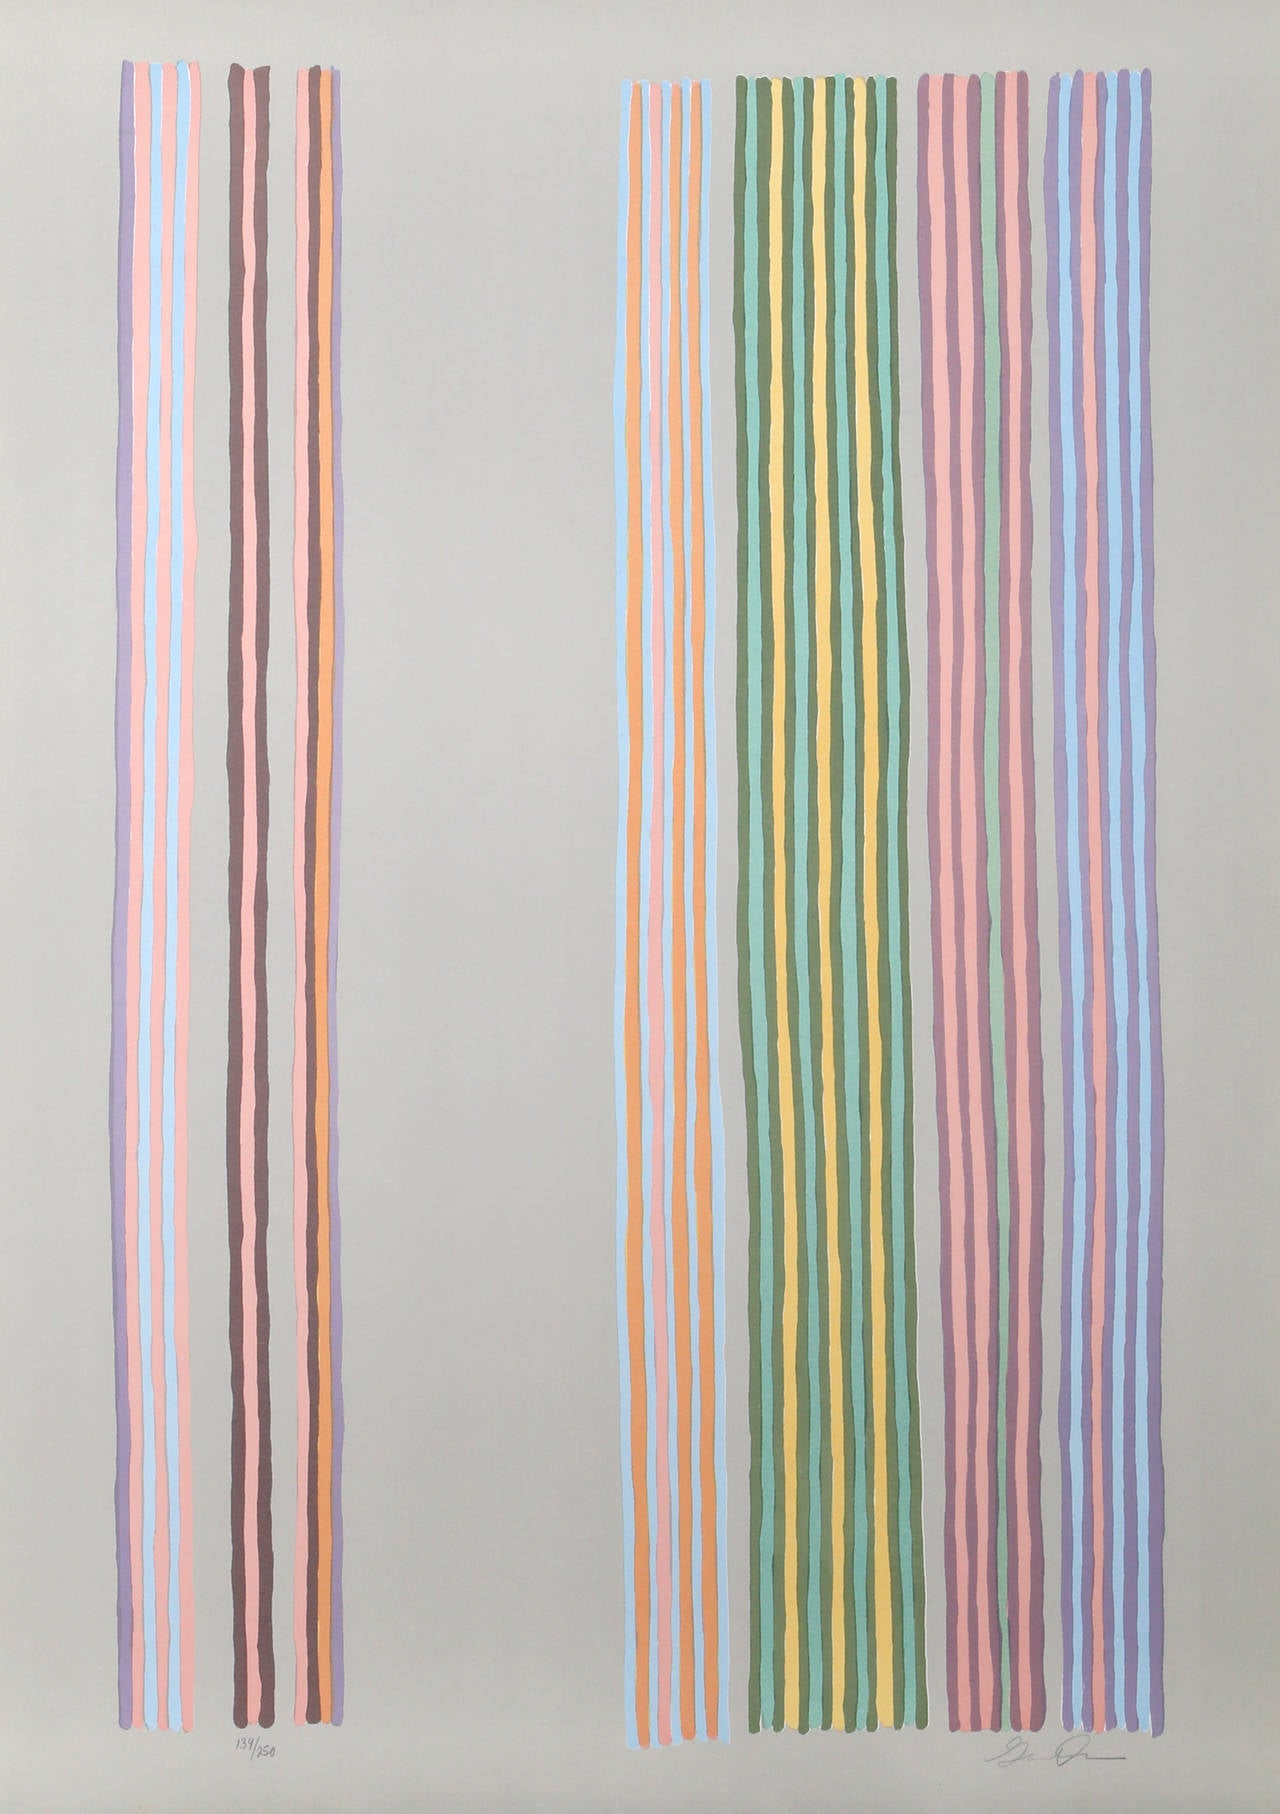 Artiste : Gene Davis, américain (1920 - 1985)
Titre :	Rideau royal
Année : 1980
Médium : Sérigraphie en couleurs sur Arches, signée et numérotée au crayon
Edition : 250
Taille du papier : 29.75  x 21.75 in. (75.57  x 55,25 cm)